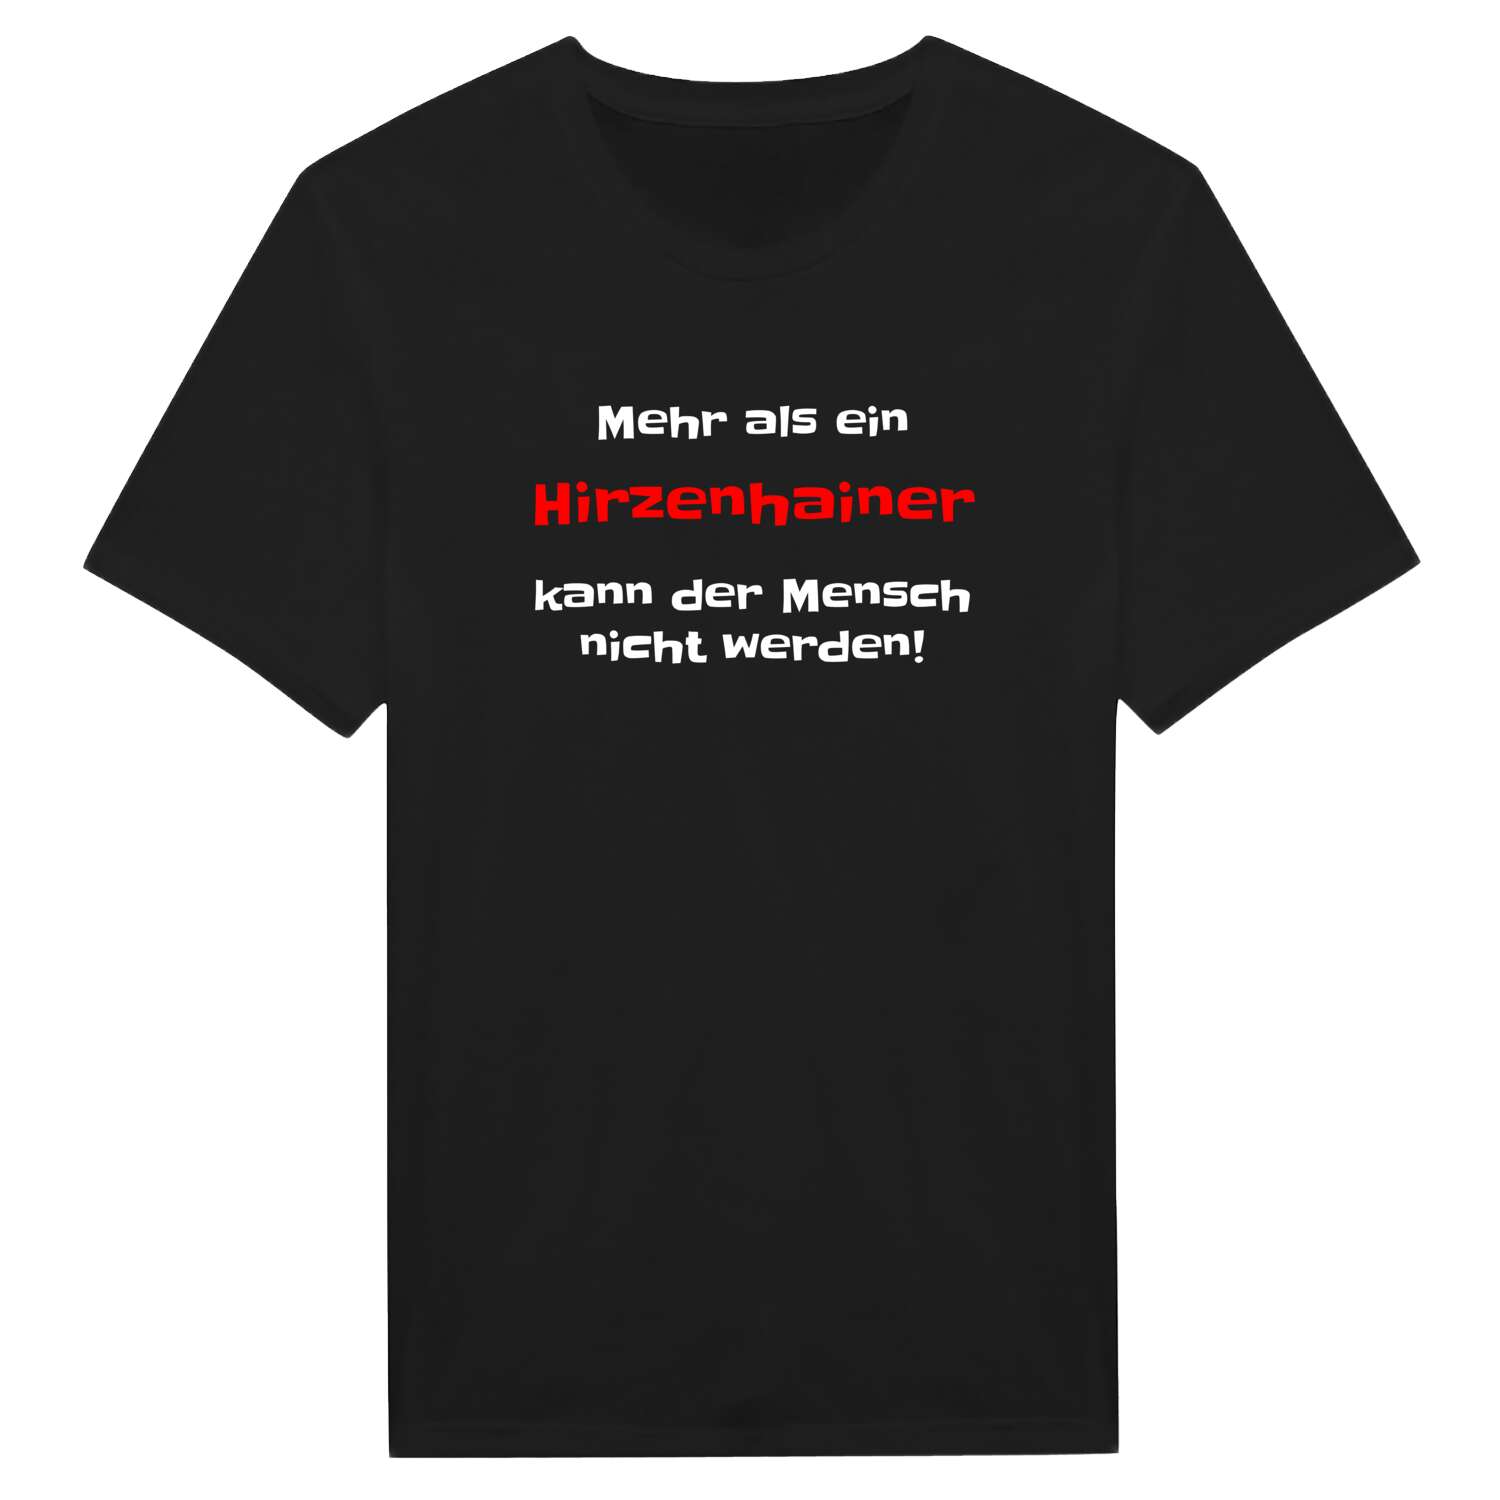 Hirzenhain T-Shirt »Mehr als ein«